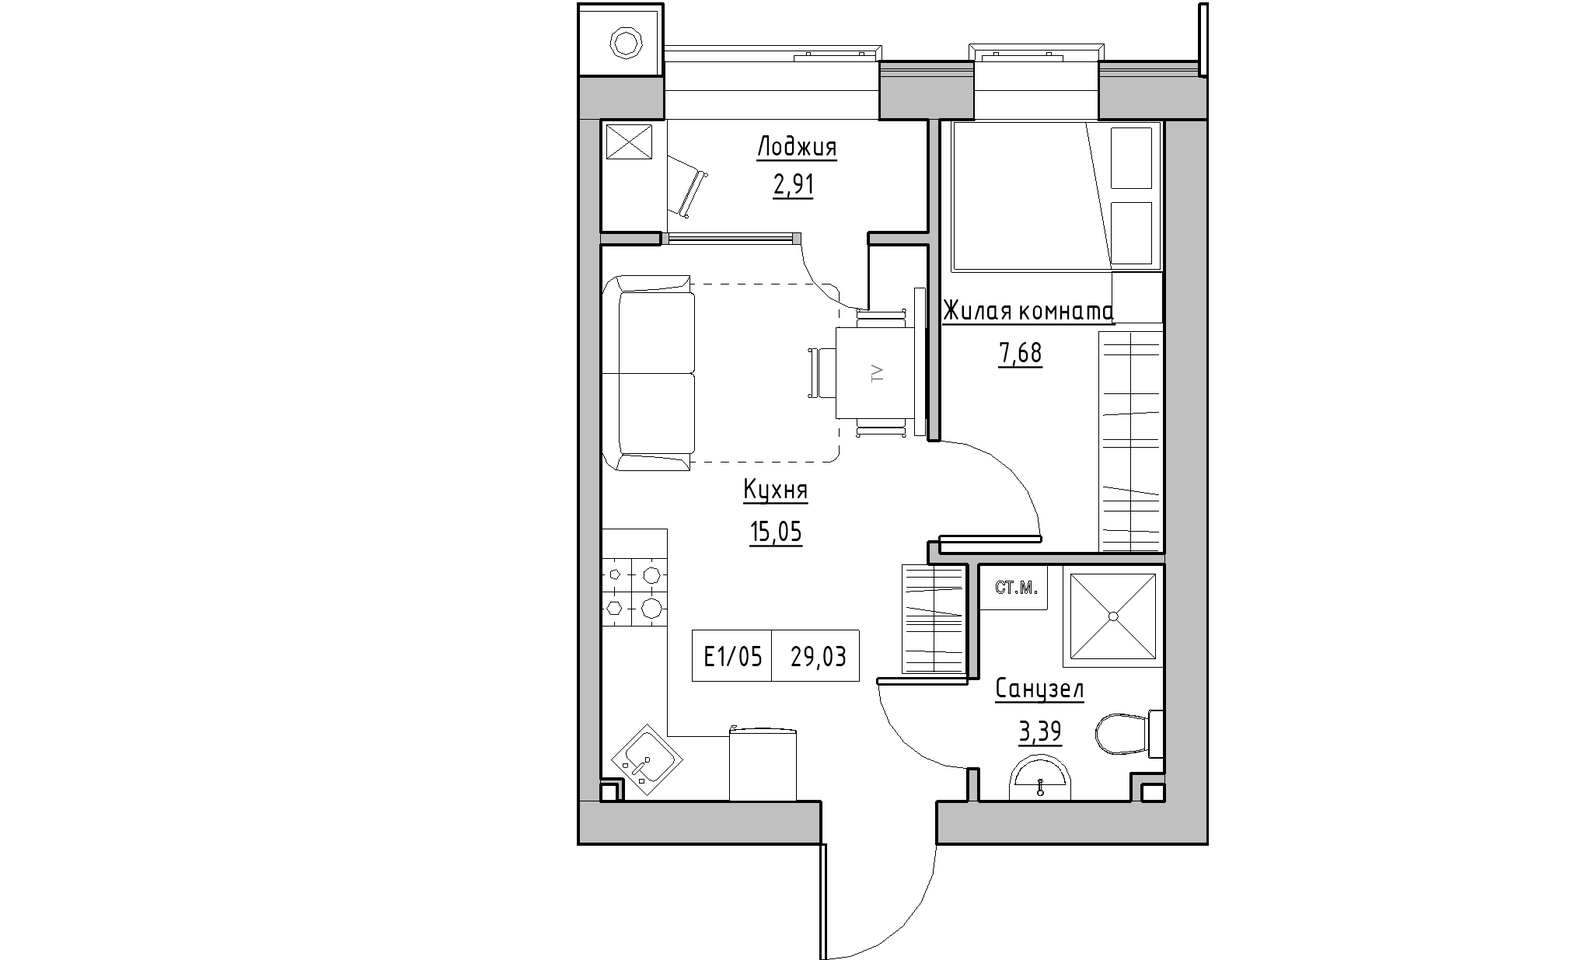 Планування 1-к квартира площею 29.03м2, KS-014-03/0007.